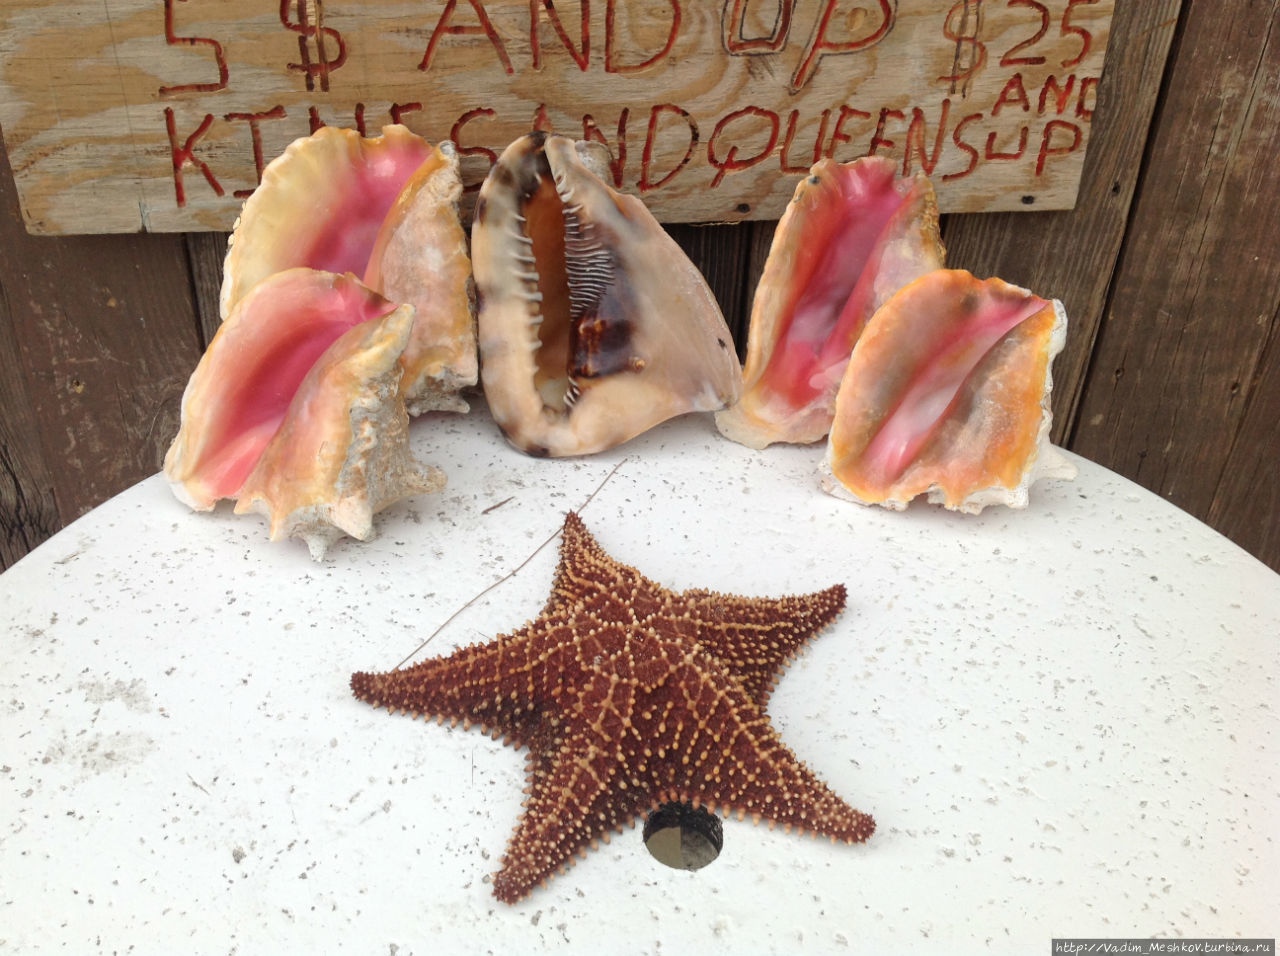 Багамская фауна — раковины и морская звезда.